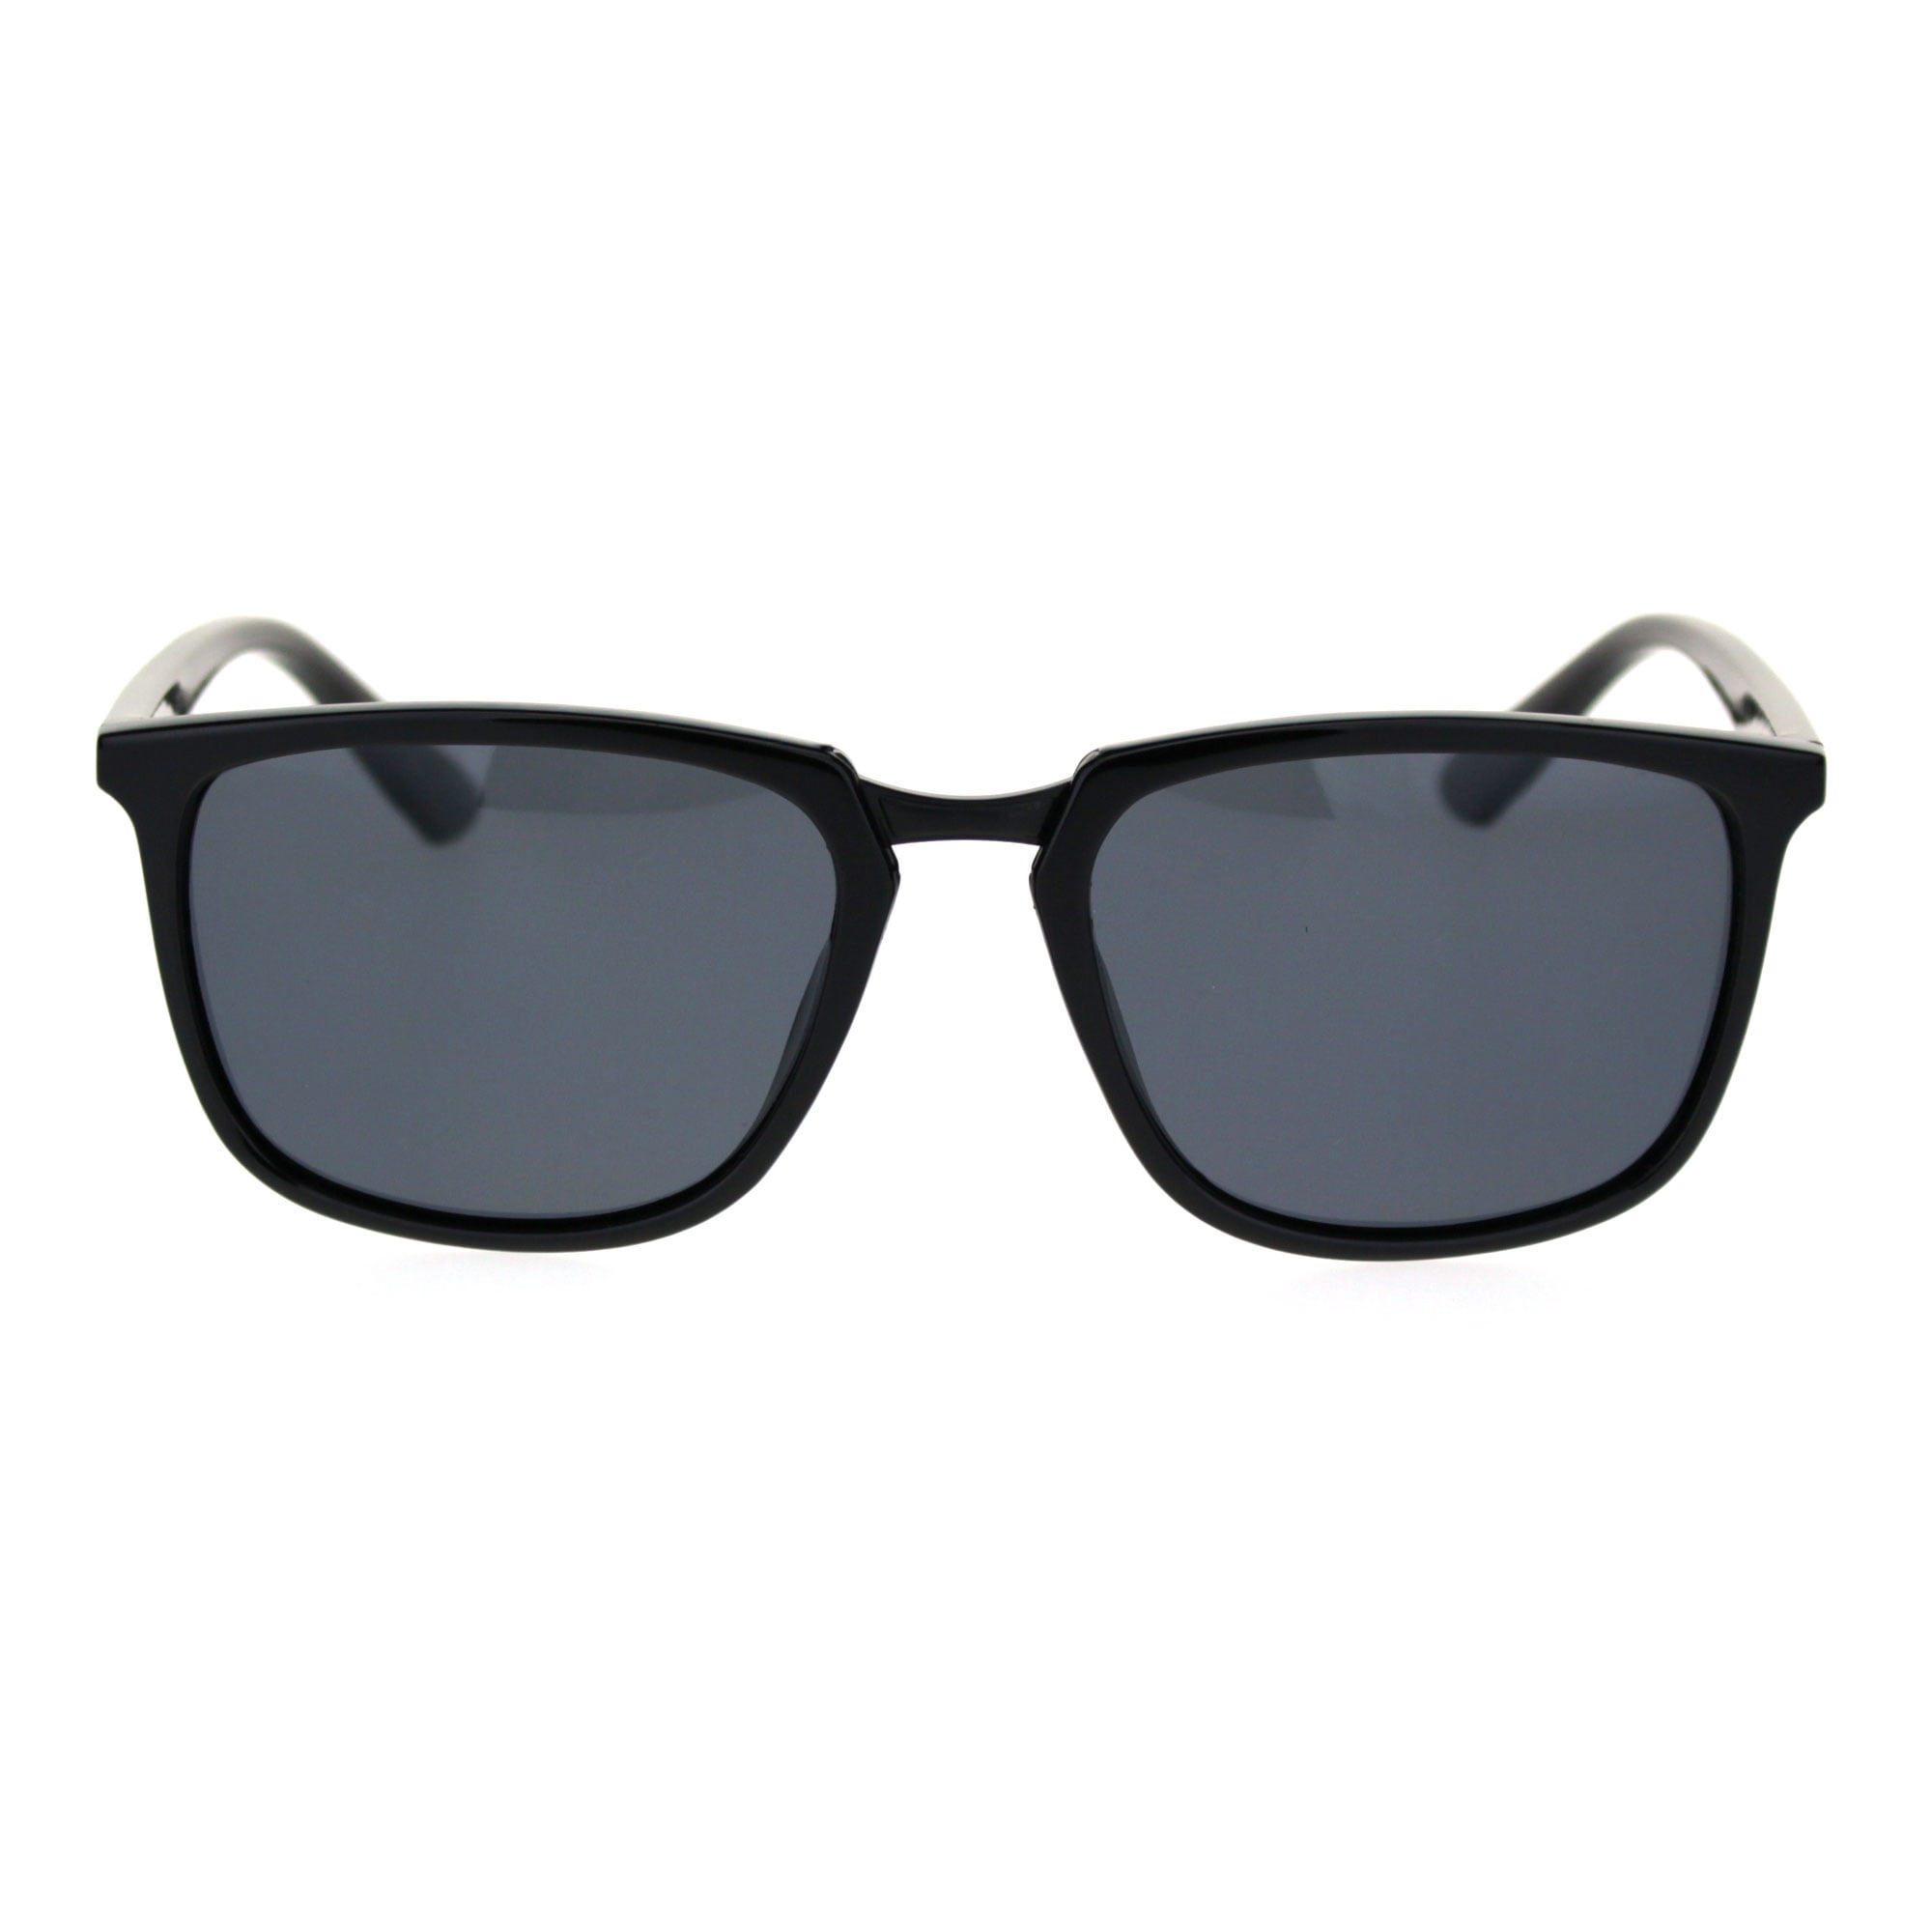 Antiglare Polarized Lens Mens Rectangular Slick Designer Sunglasses ...